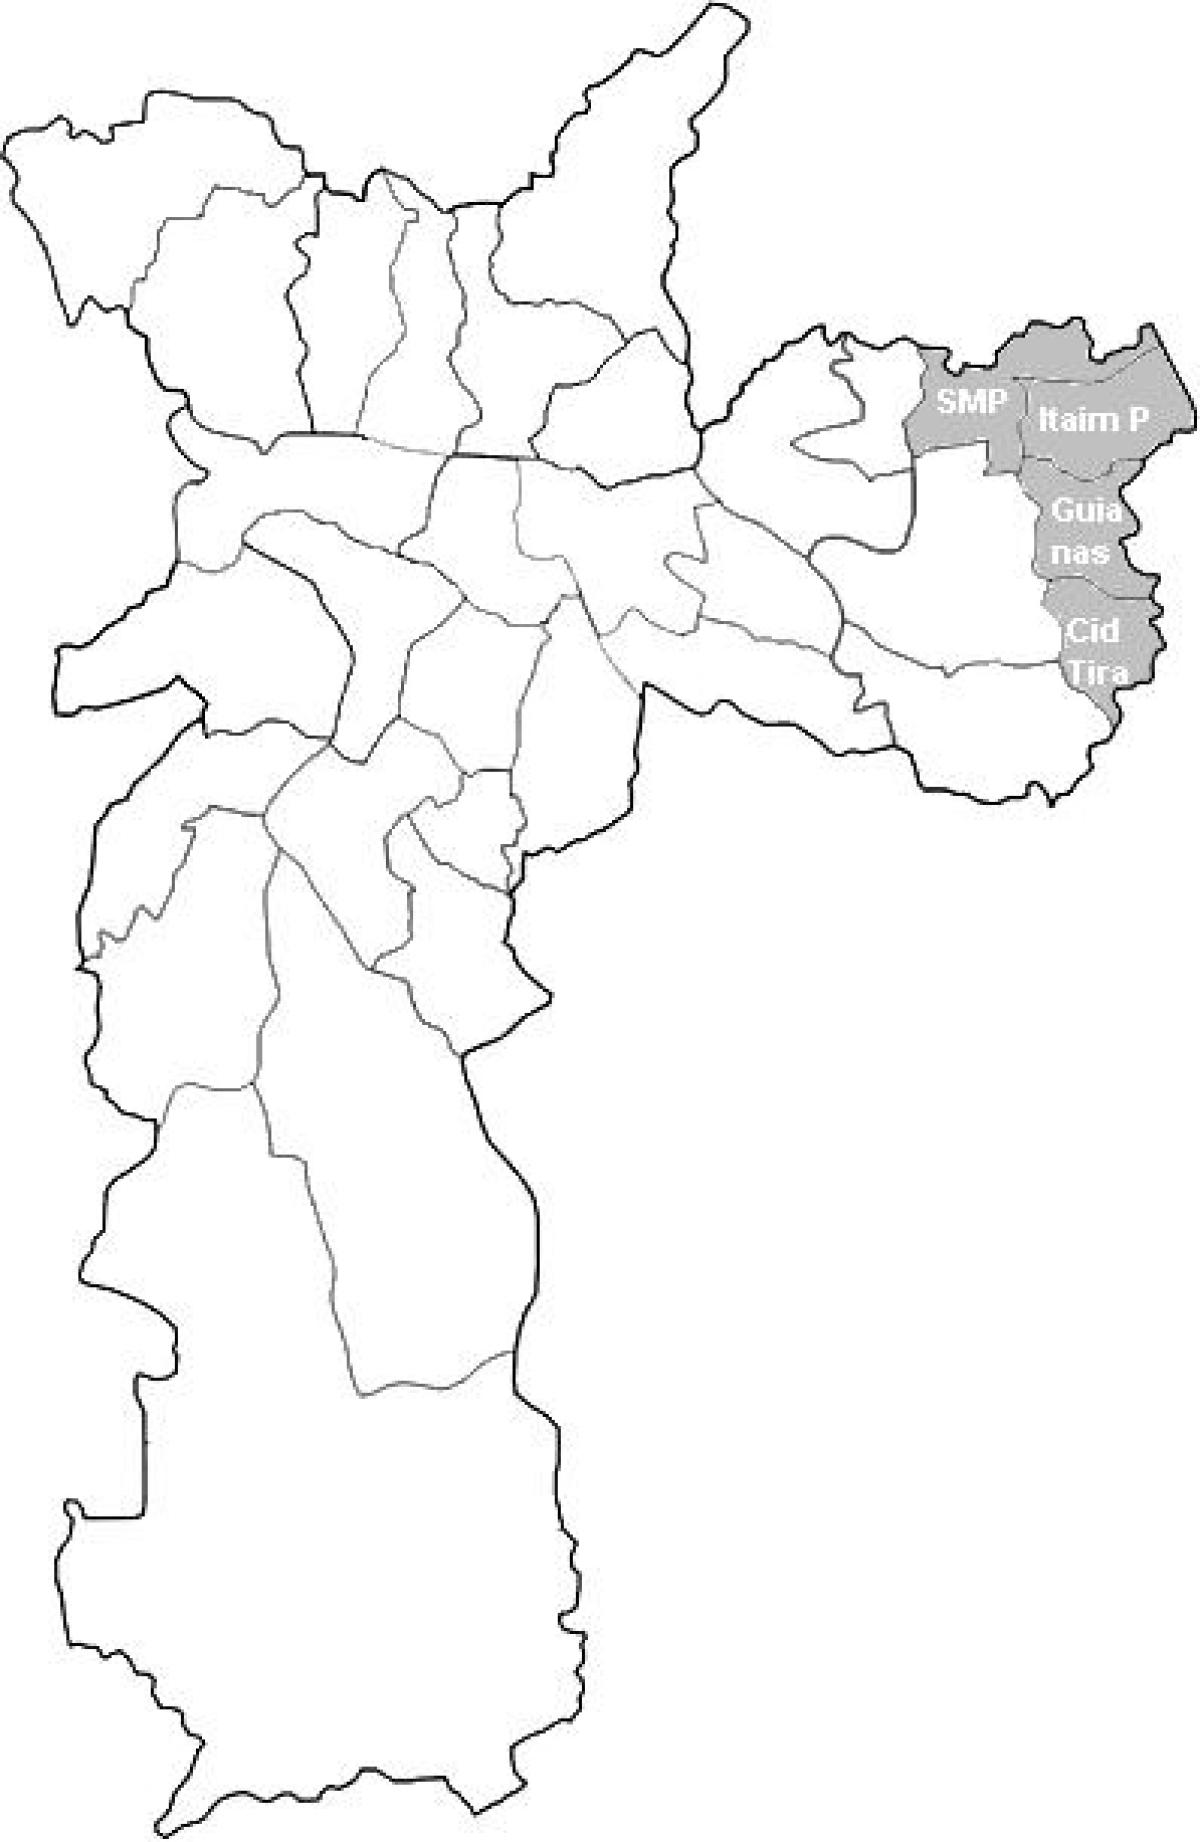 Mapa de la zona Leste 2 São Paulo